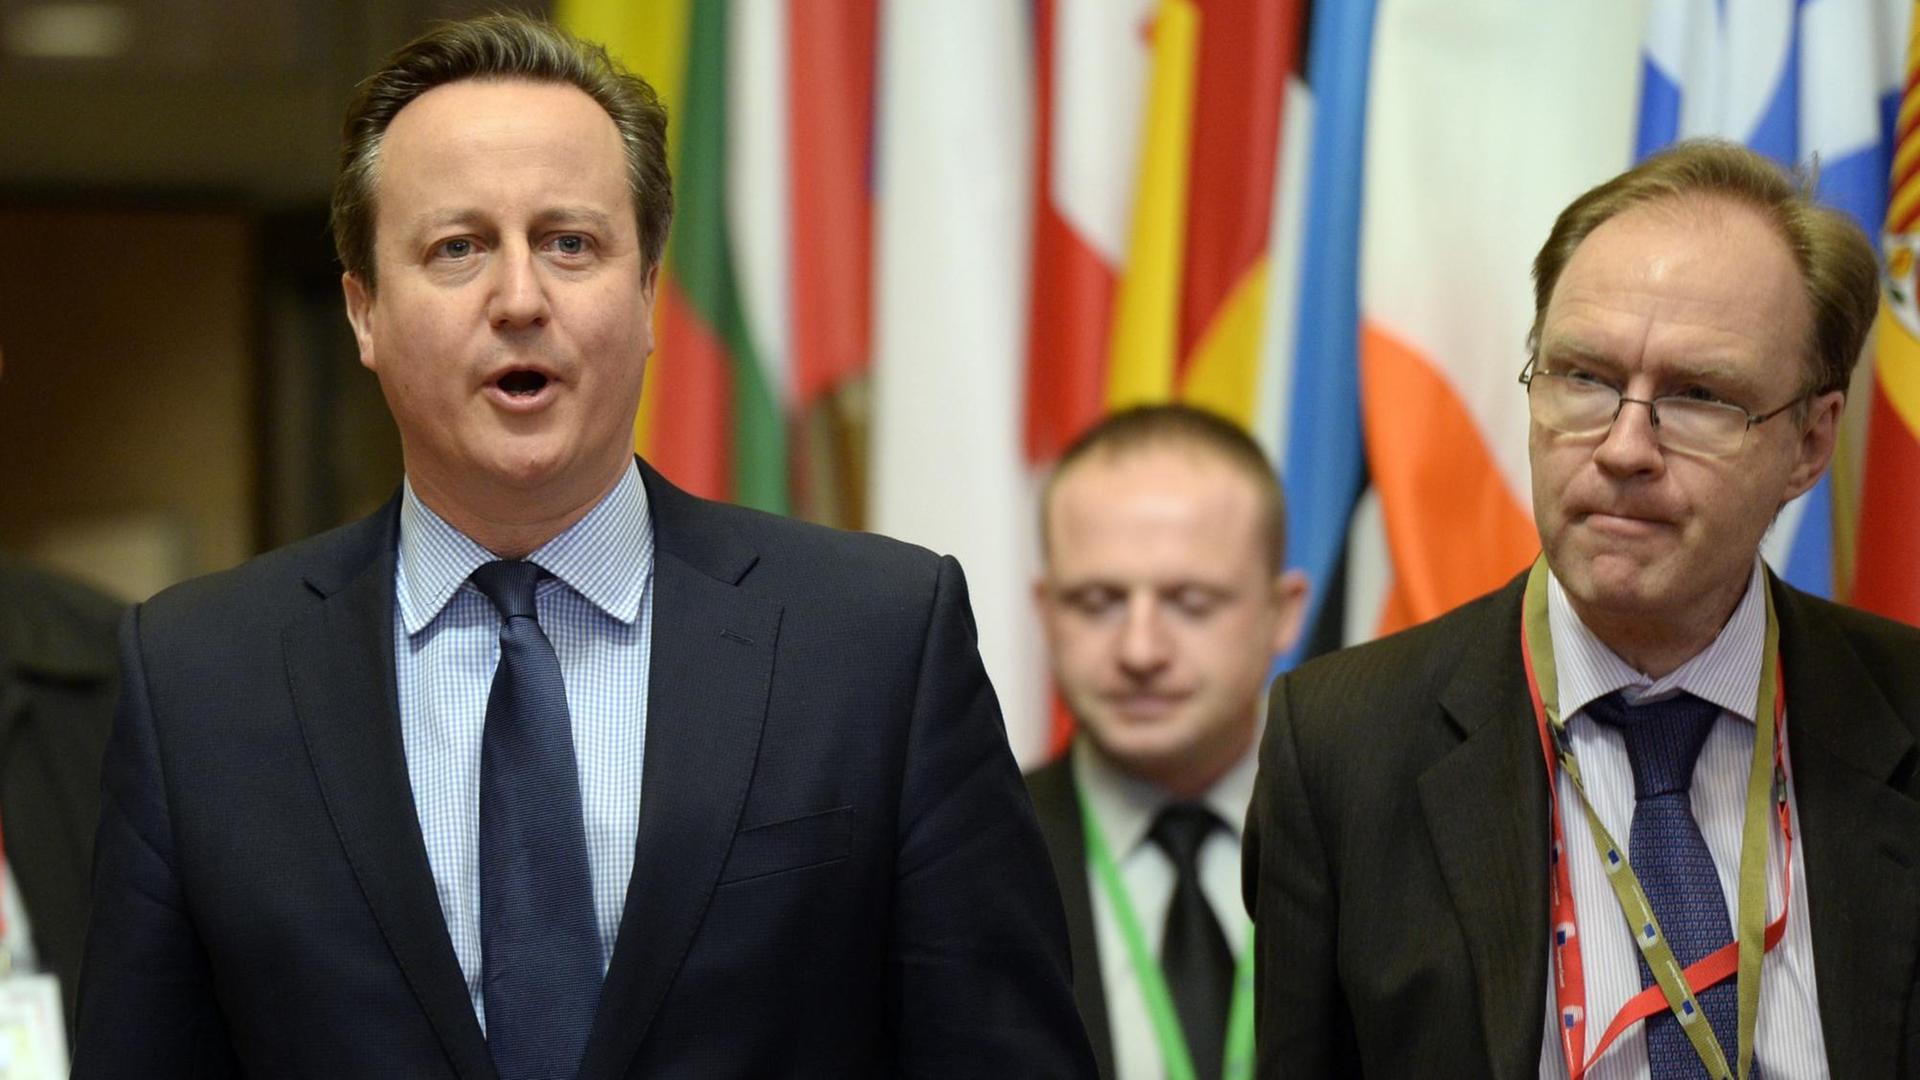 Ivan Rogers (r.) mit dem früheren Premierminister David Cameron (l.).